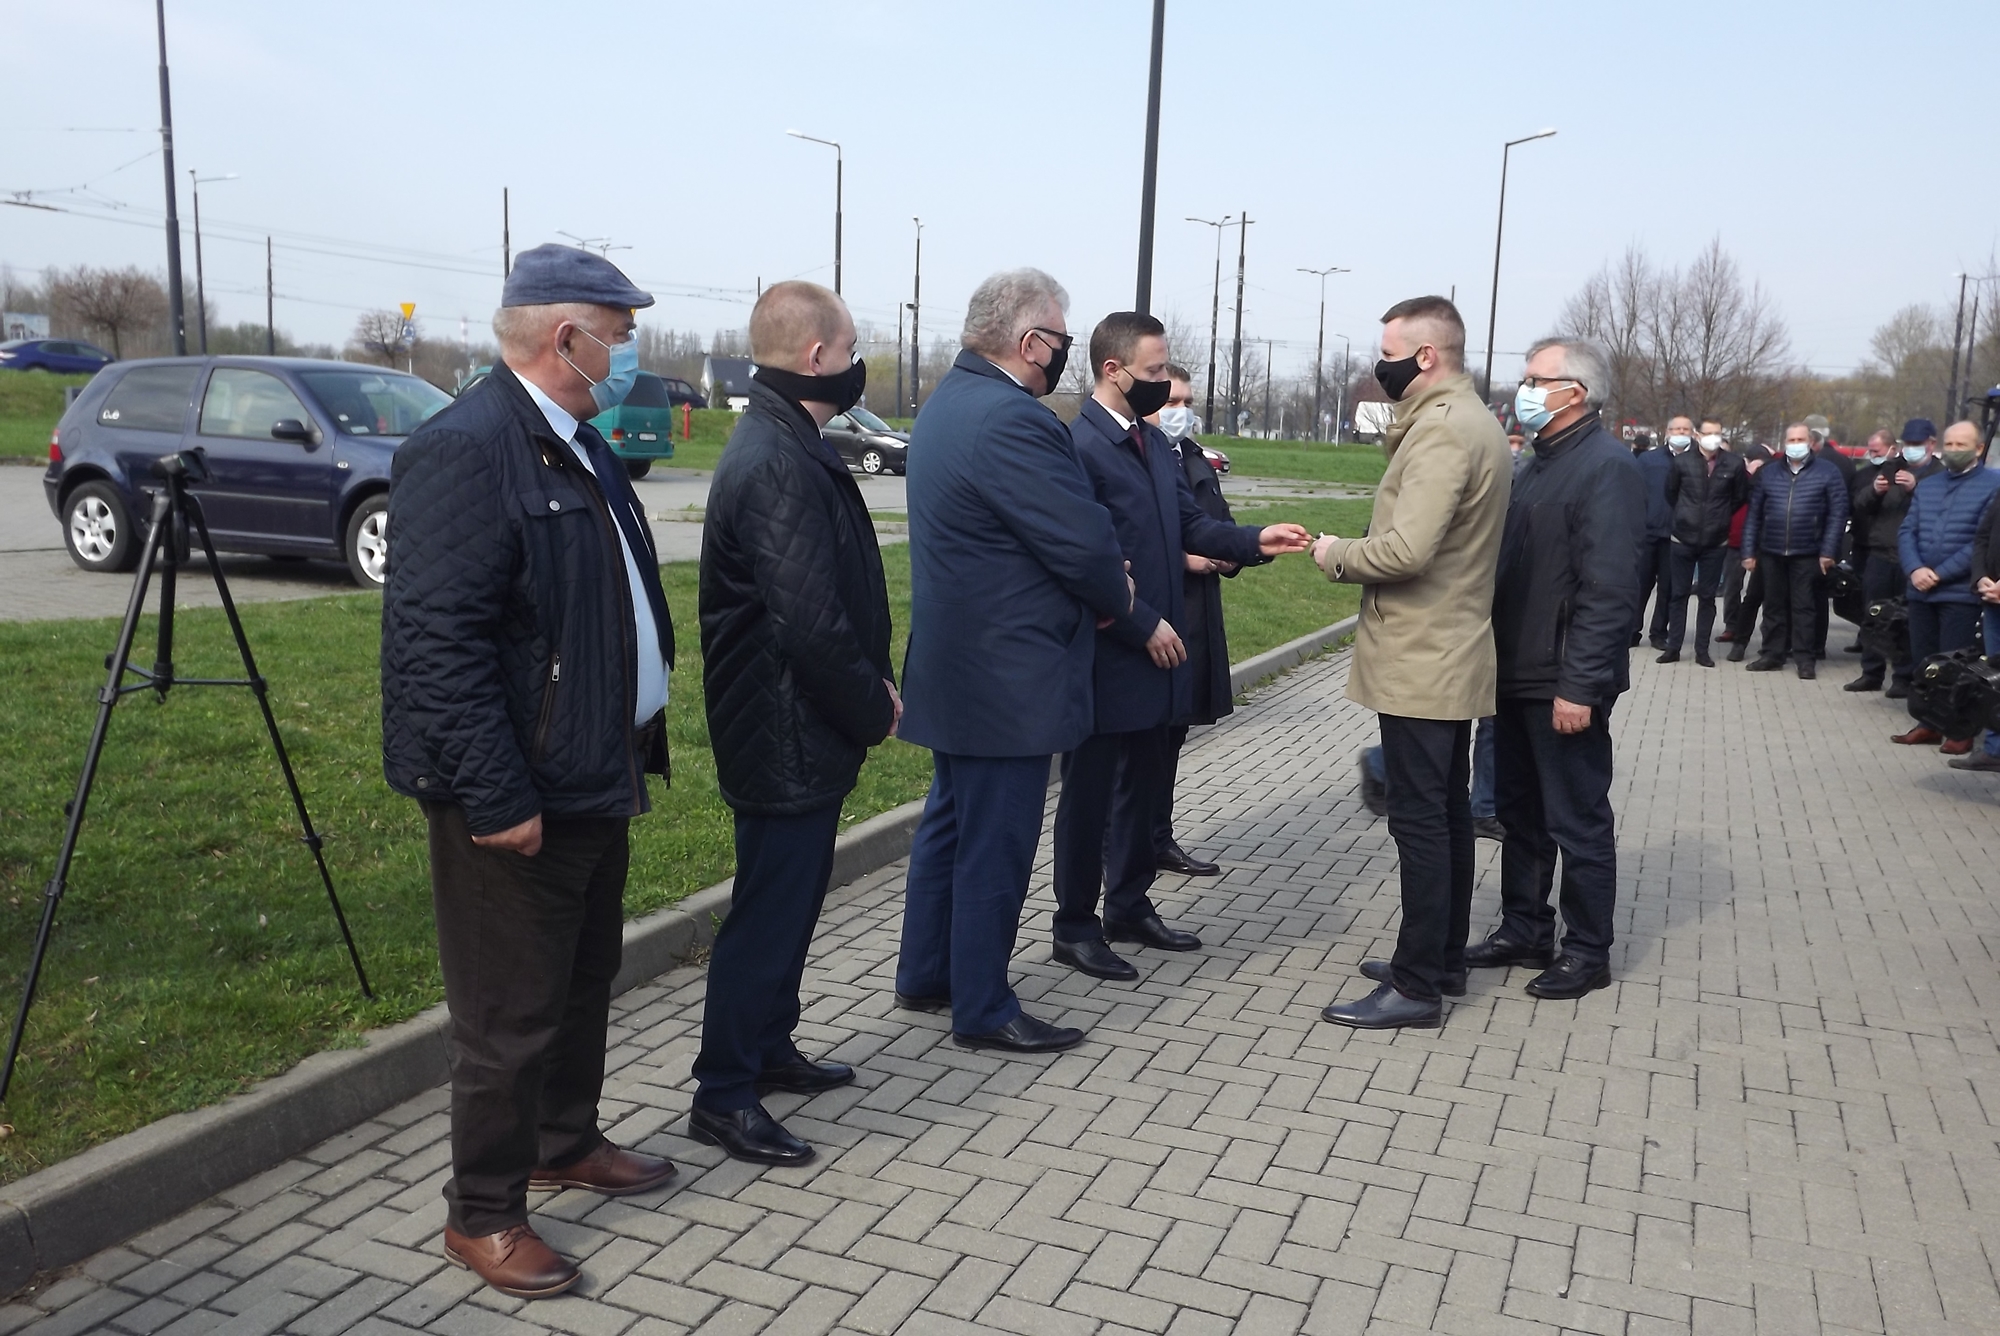 Na zdjęciu widzimy moment przekazania przez Wicemarszałka Michała MUlawę kluczyków do ciągnika, kierownikowi Rejonu Dróg Wojewódzkich w Hrubieszowie